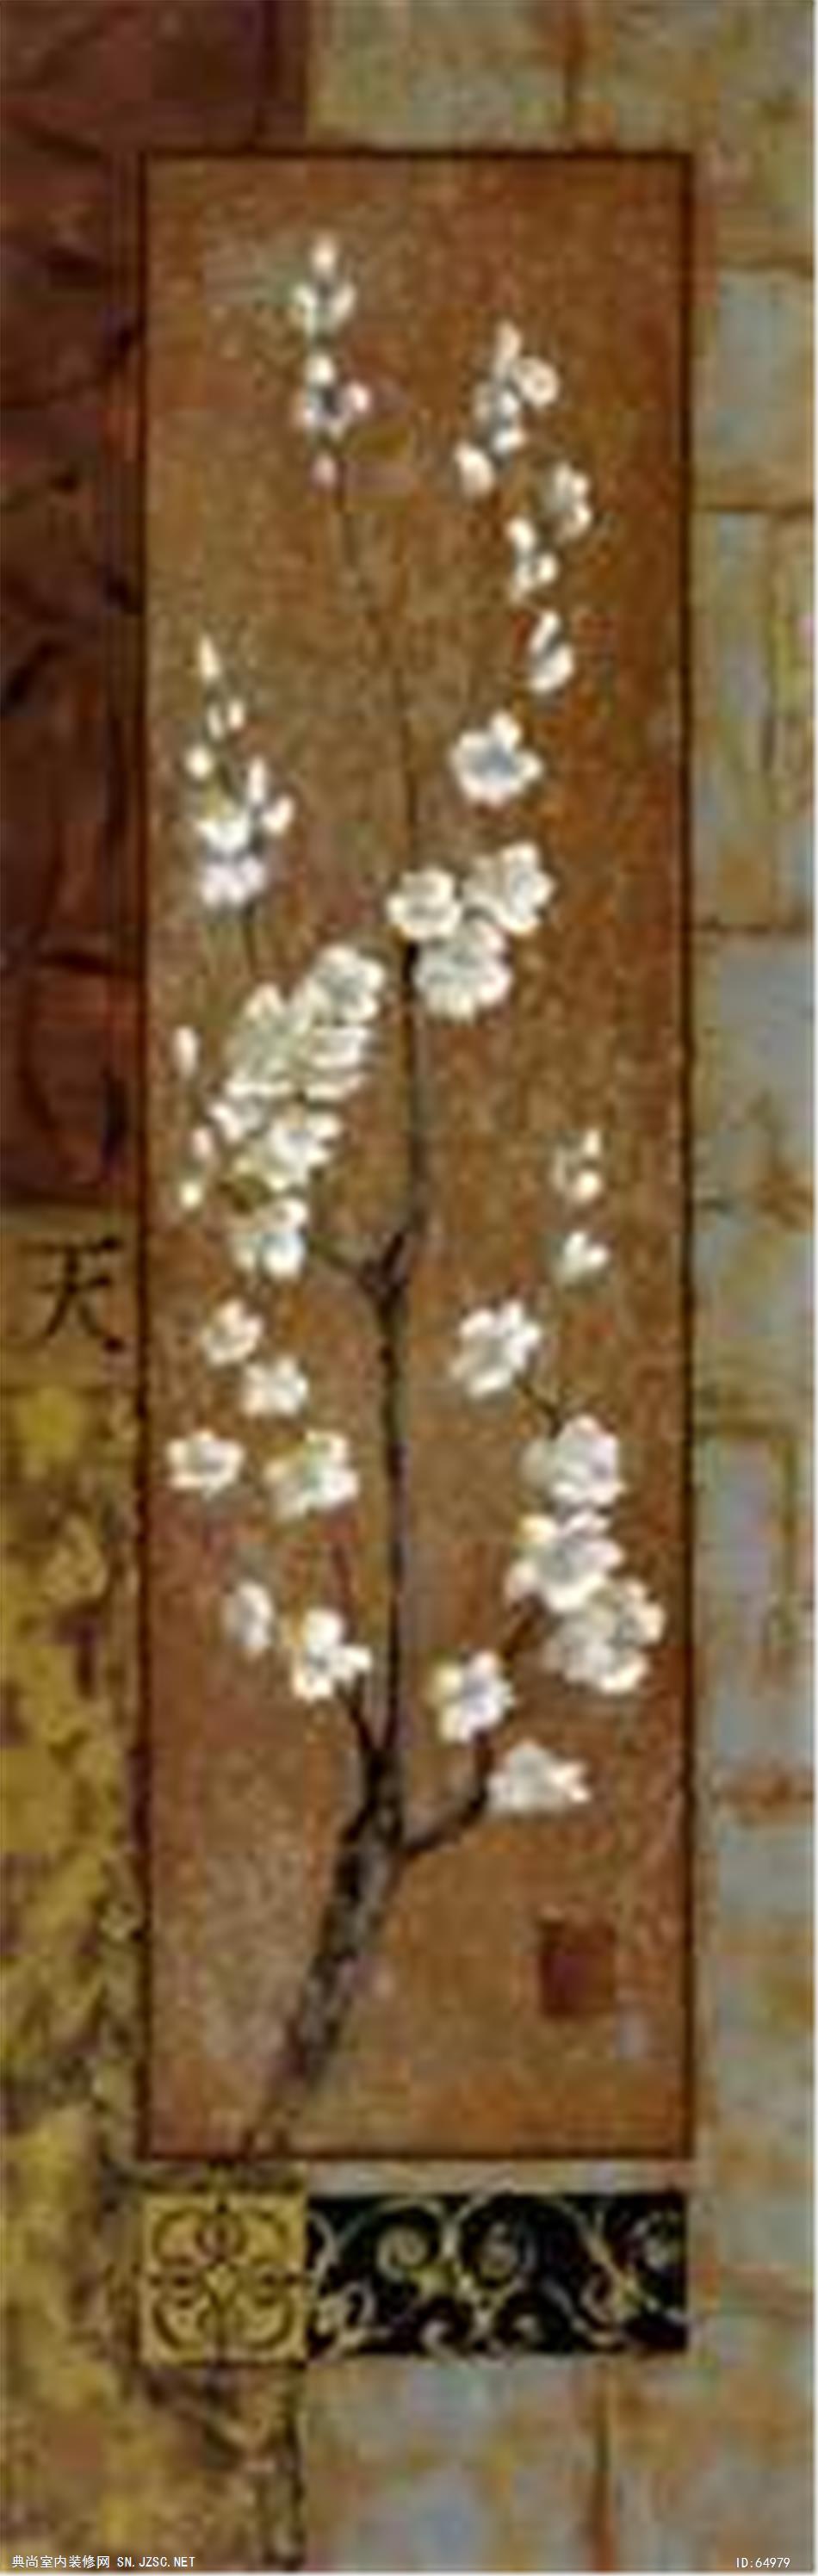 花卉画 (195)